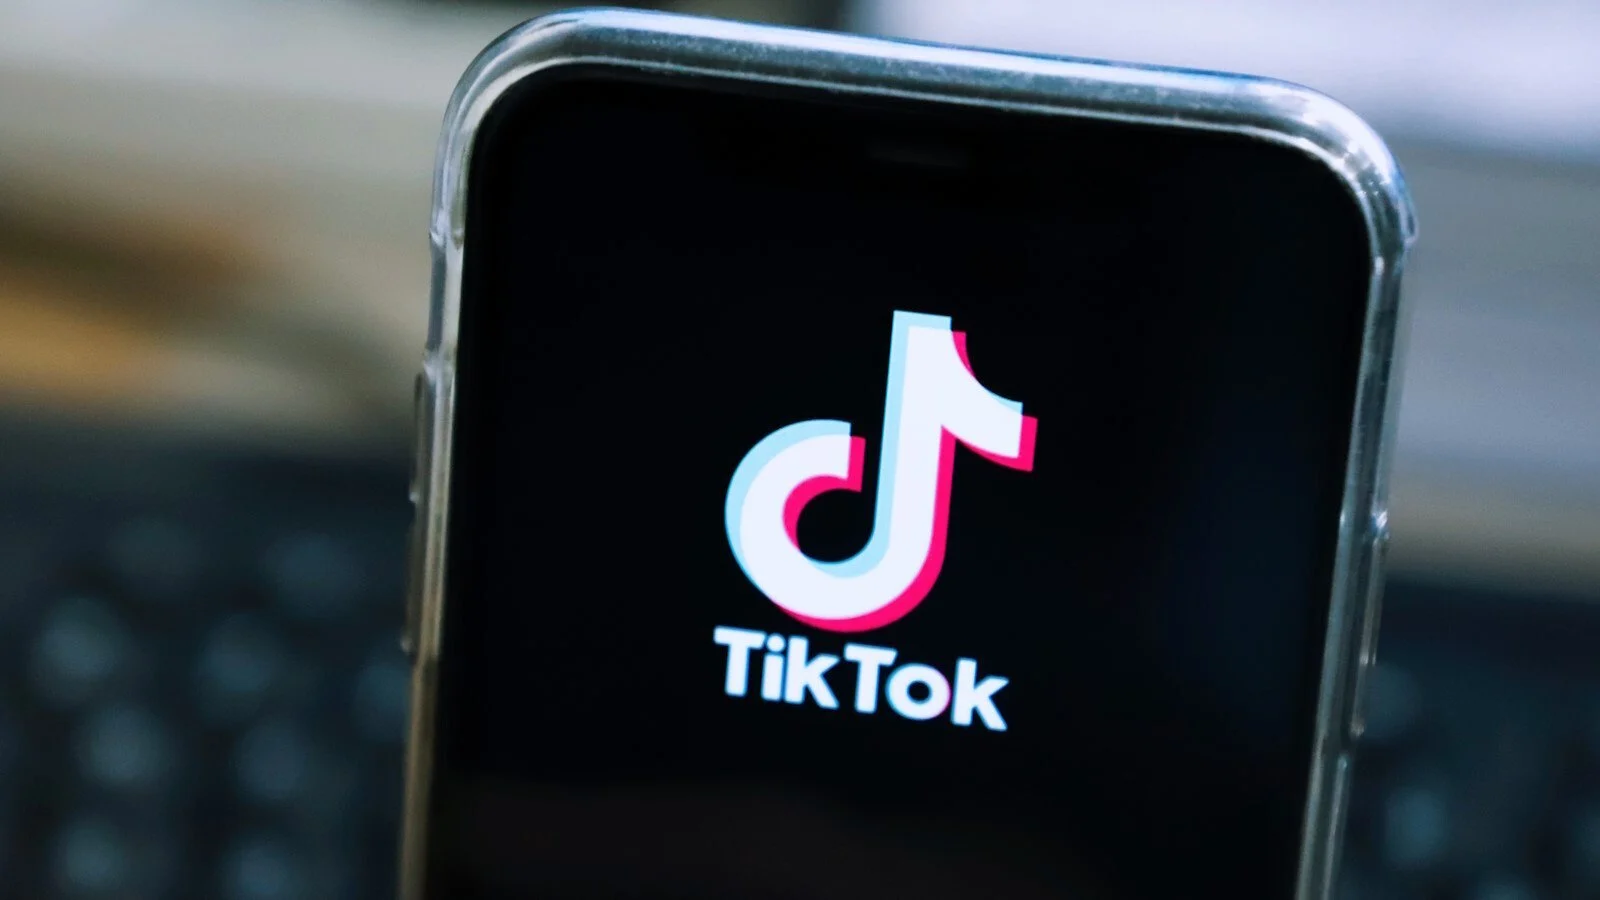 TikTok ดูเหมือนจะขยายขอบเขตไปไกลกว่าวิดีโอด้วยแอพ TikTok Photos ที่กำลังจะมีขึ้น